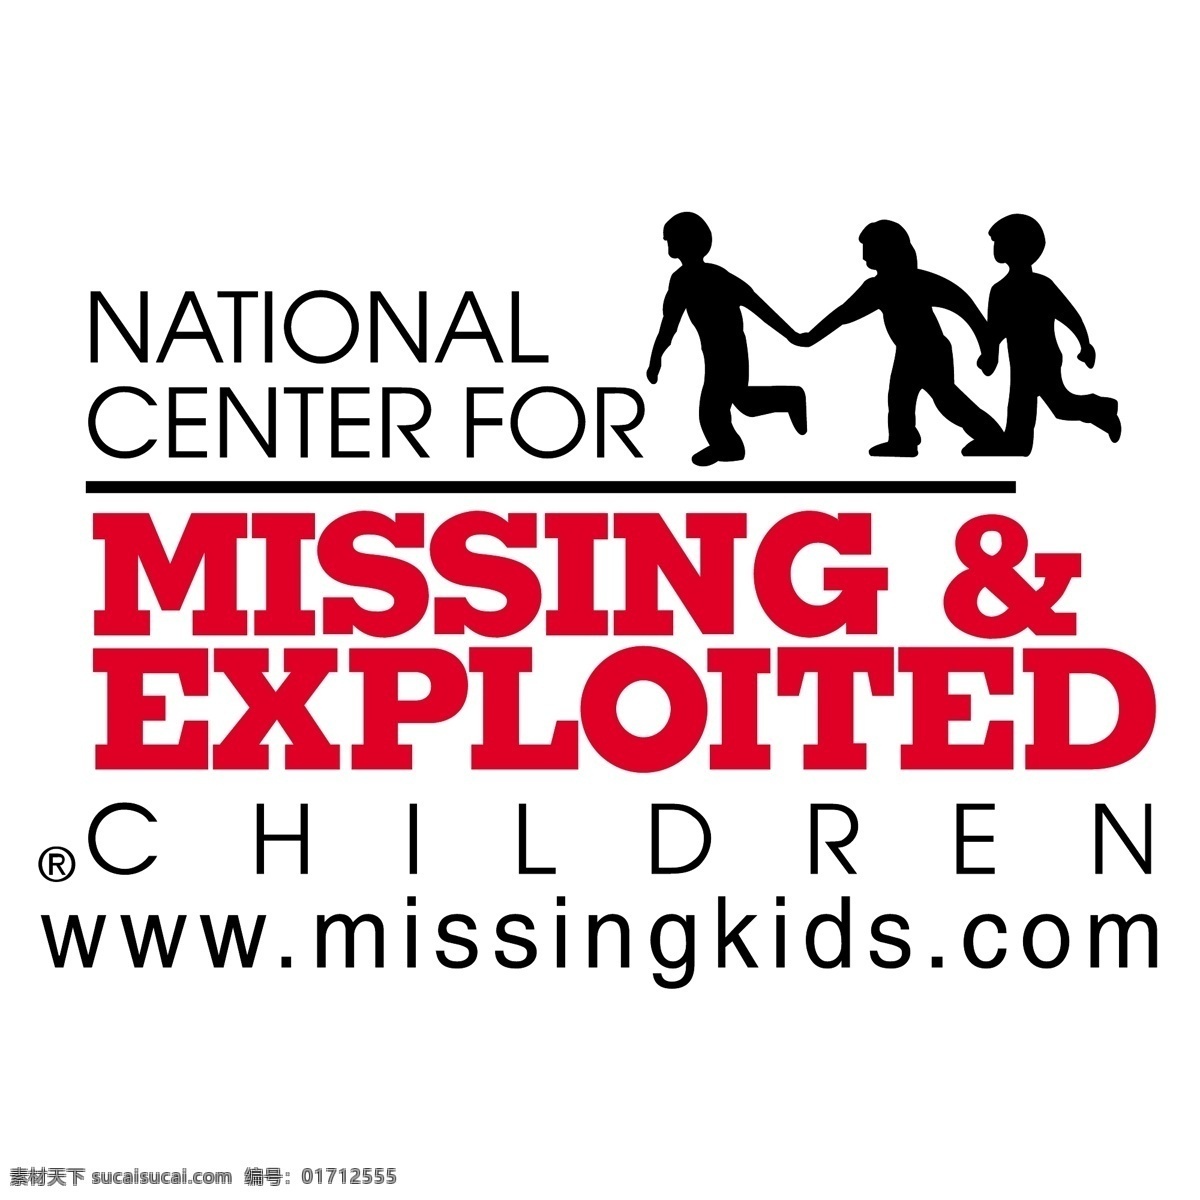 全国 失踪 剥削 儿童 中心 国家 孩子 小姐 利用 矢量图 其他矢量图